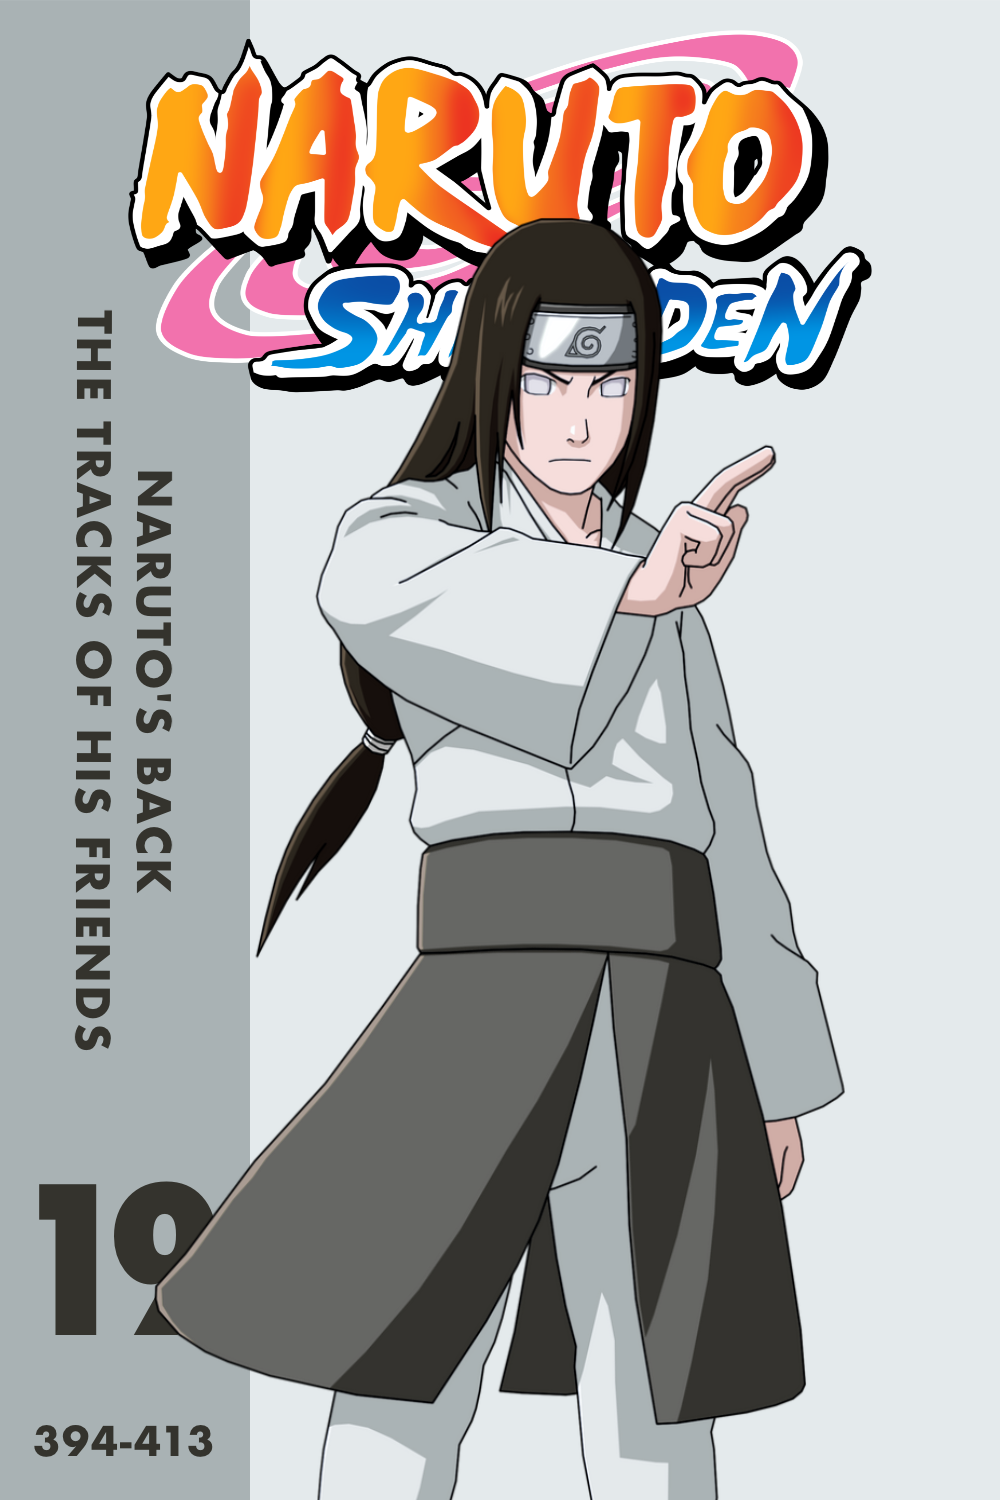 Naruto: Shippuden (season 19) - Wikipedia